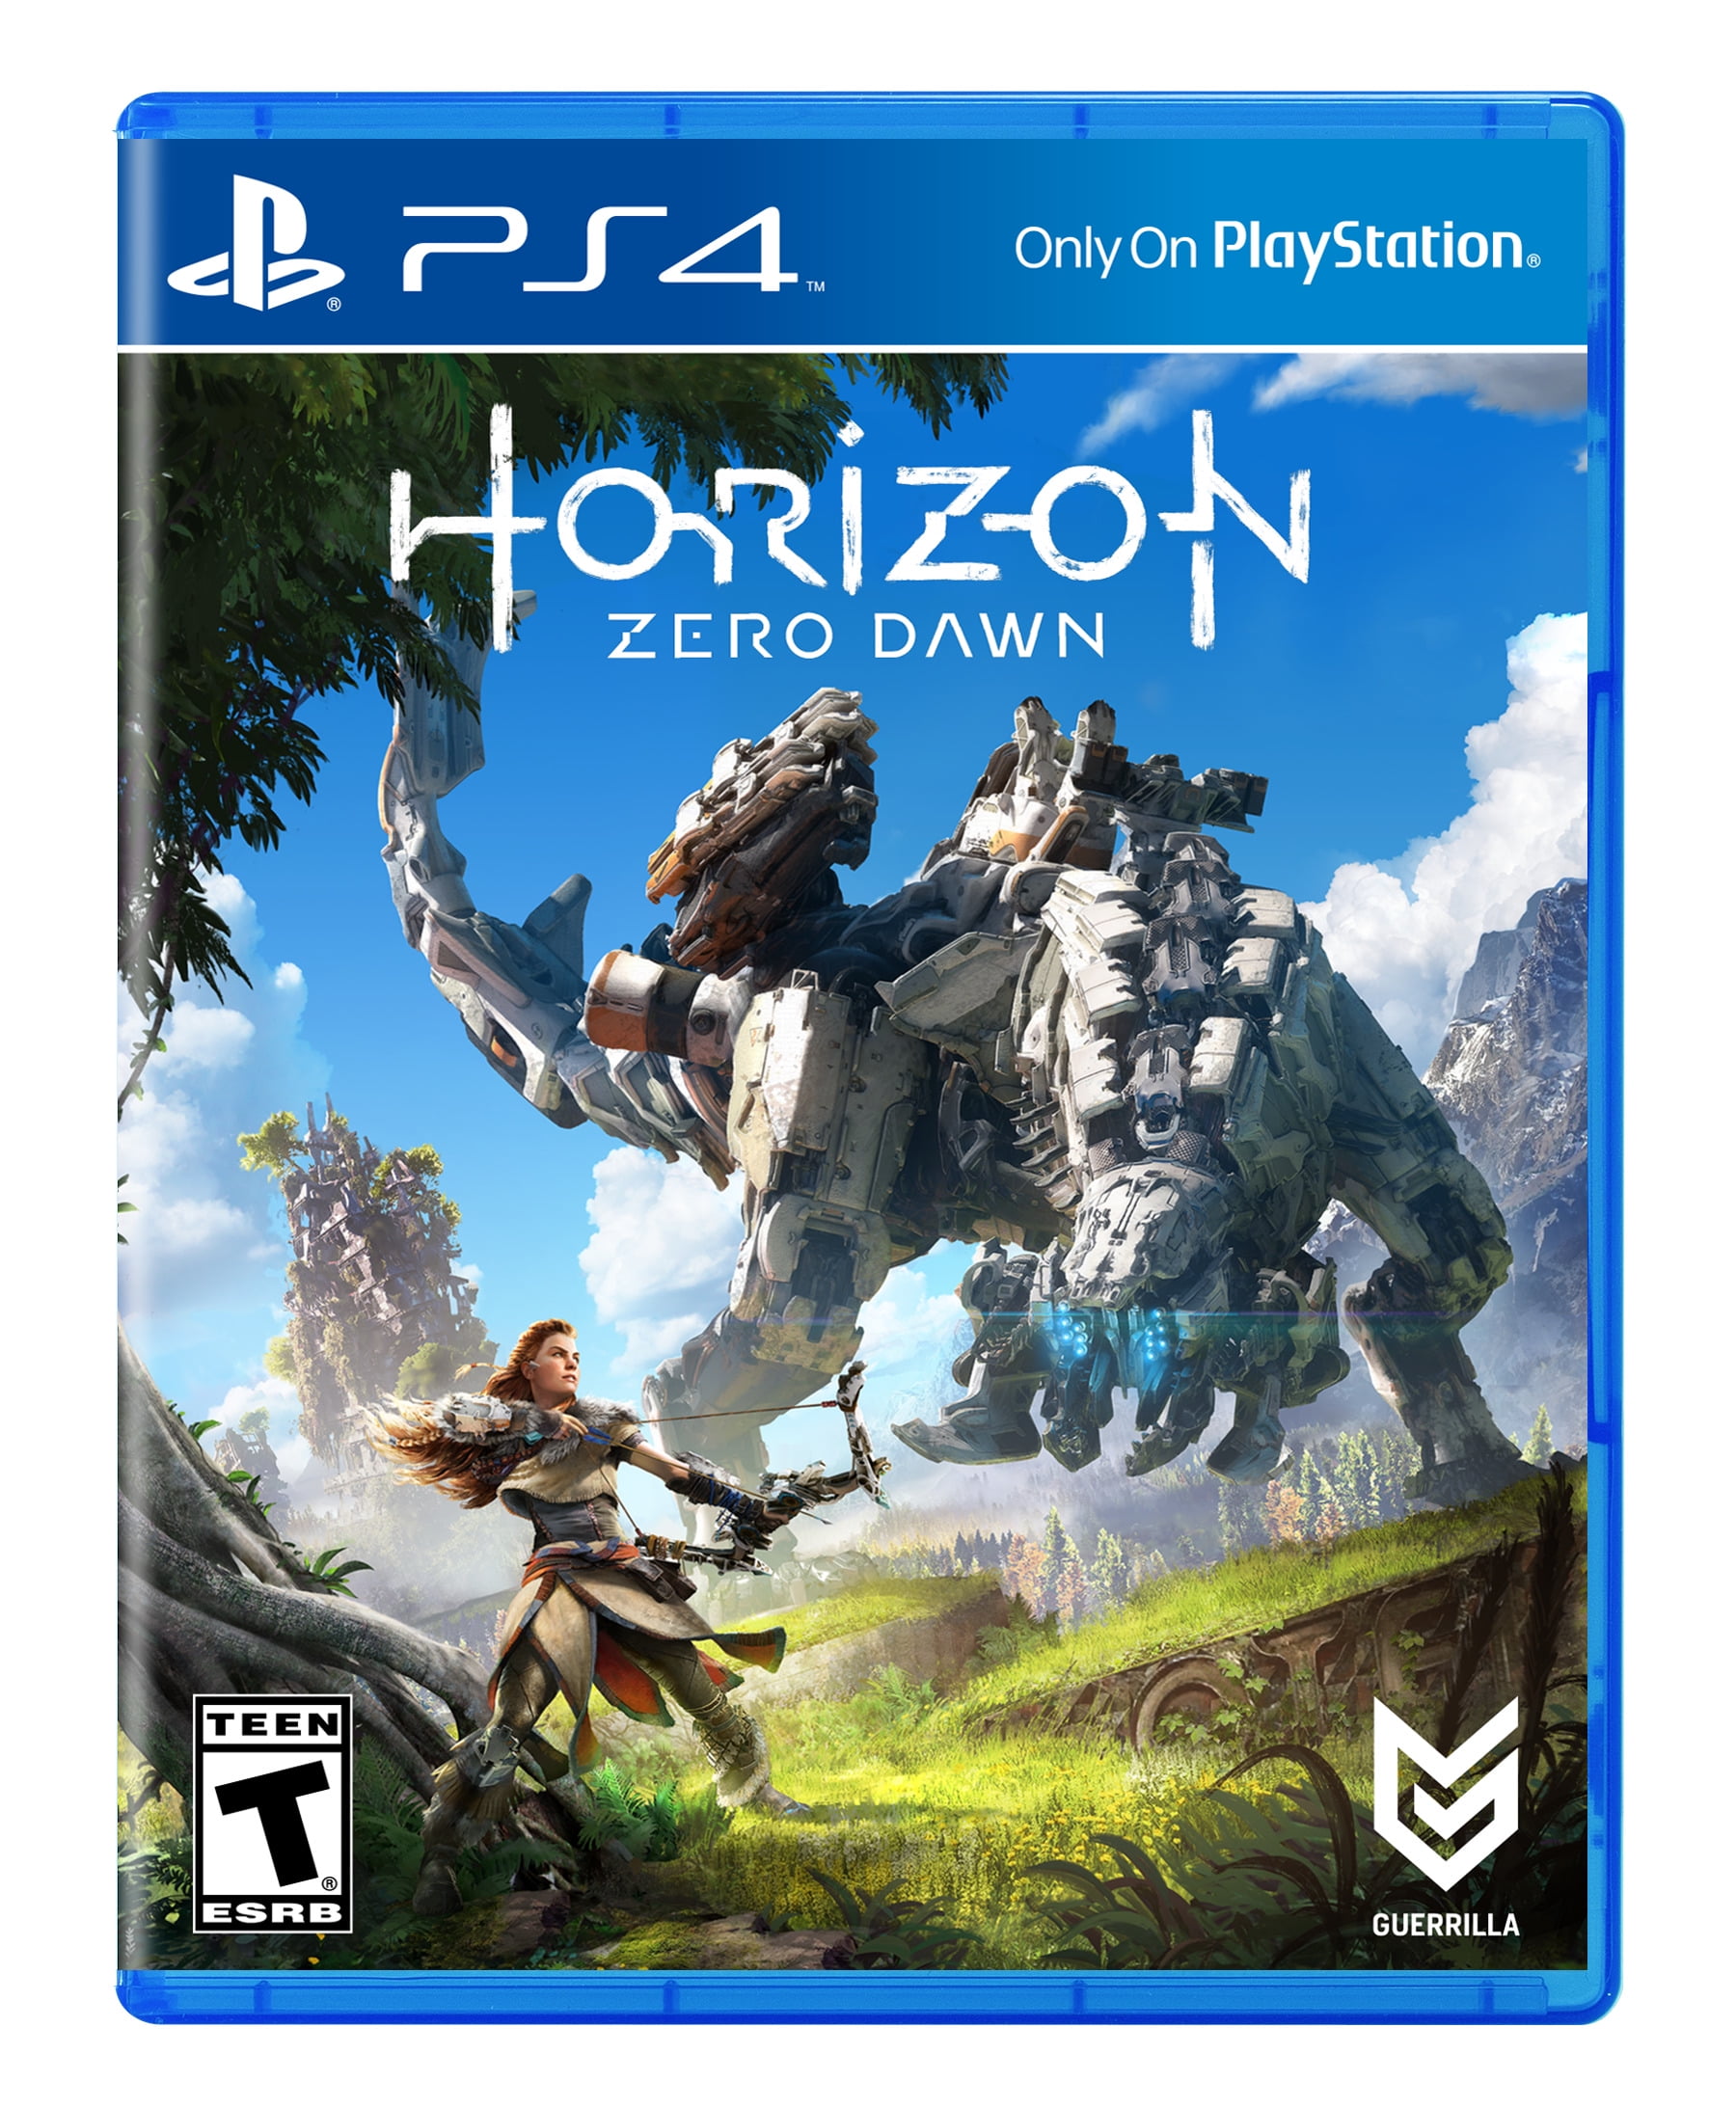 Horizon Zero Dawn - 1 Hour of AMAZING Gameplay (PS4) 2017 